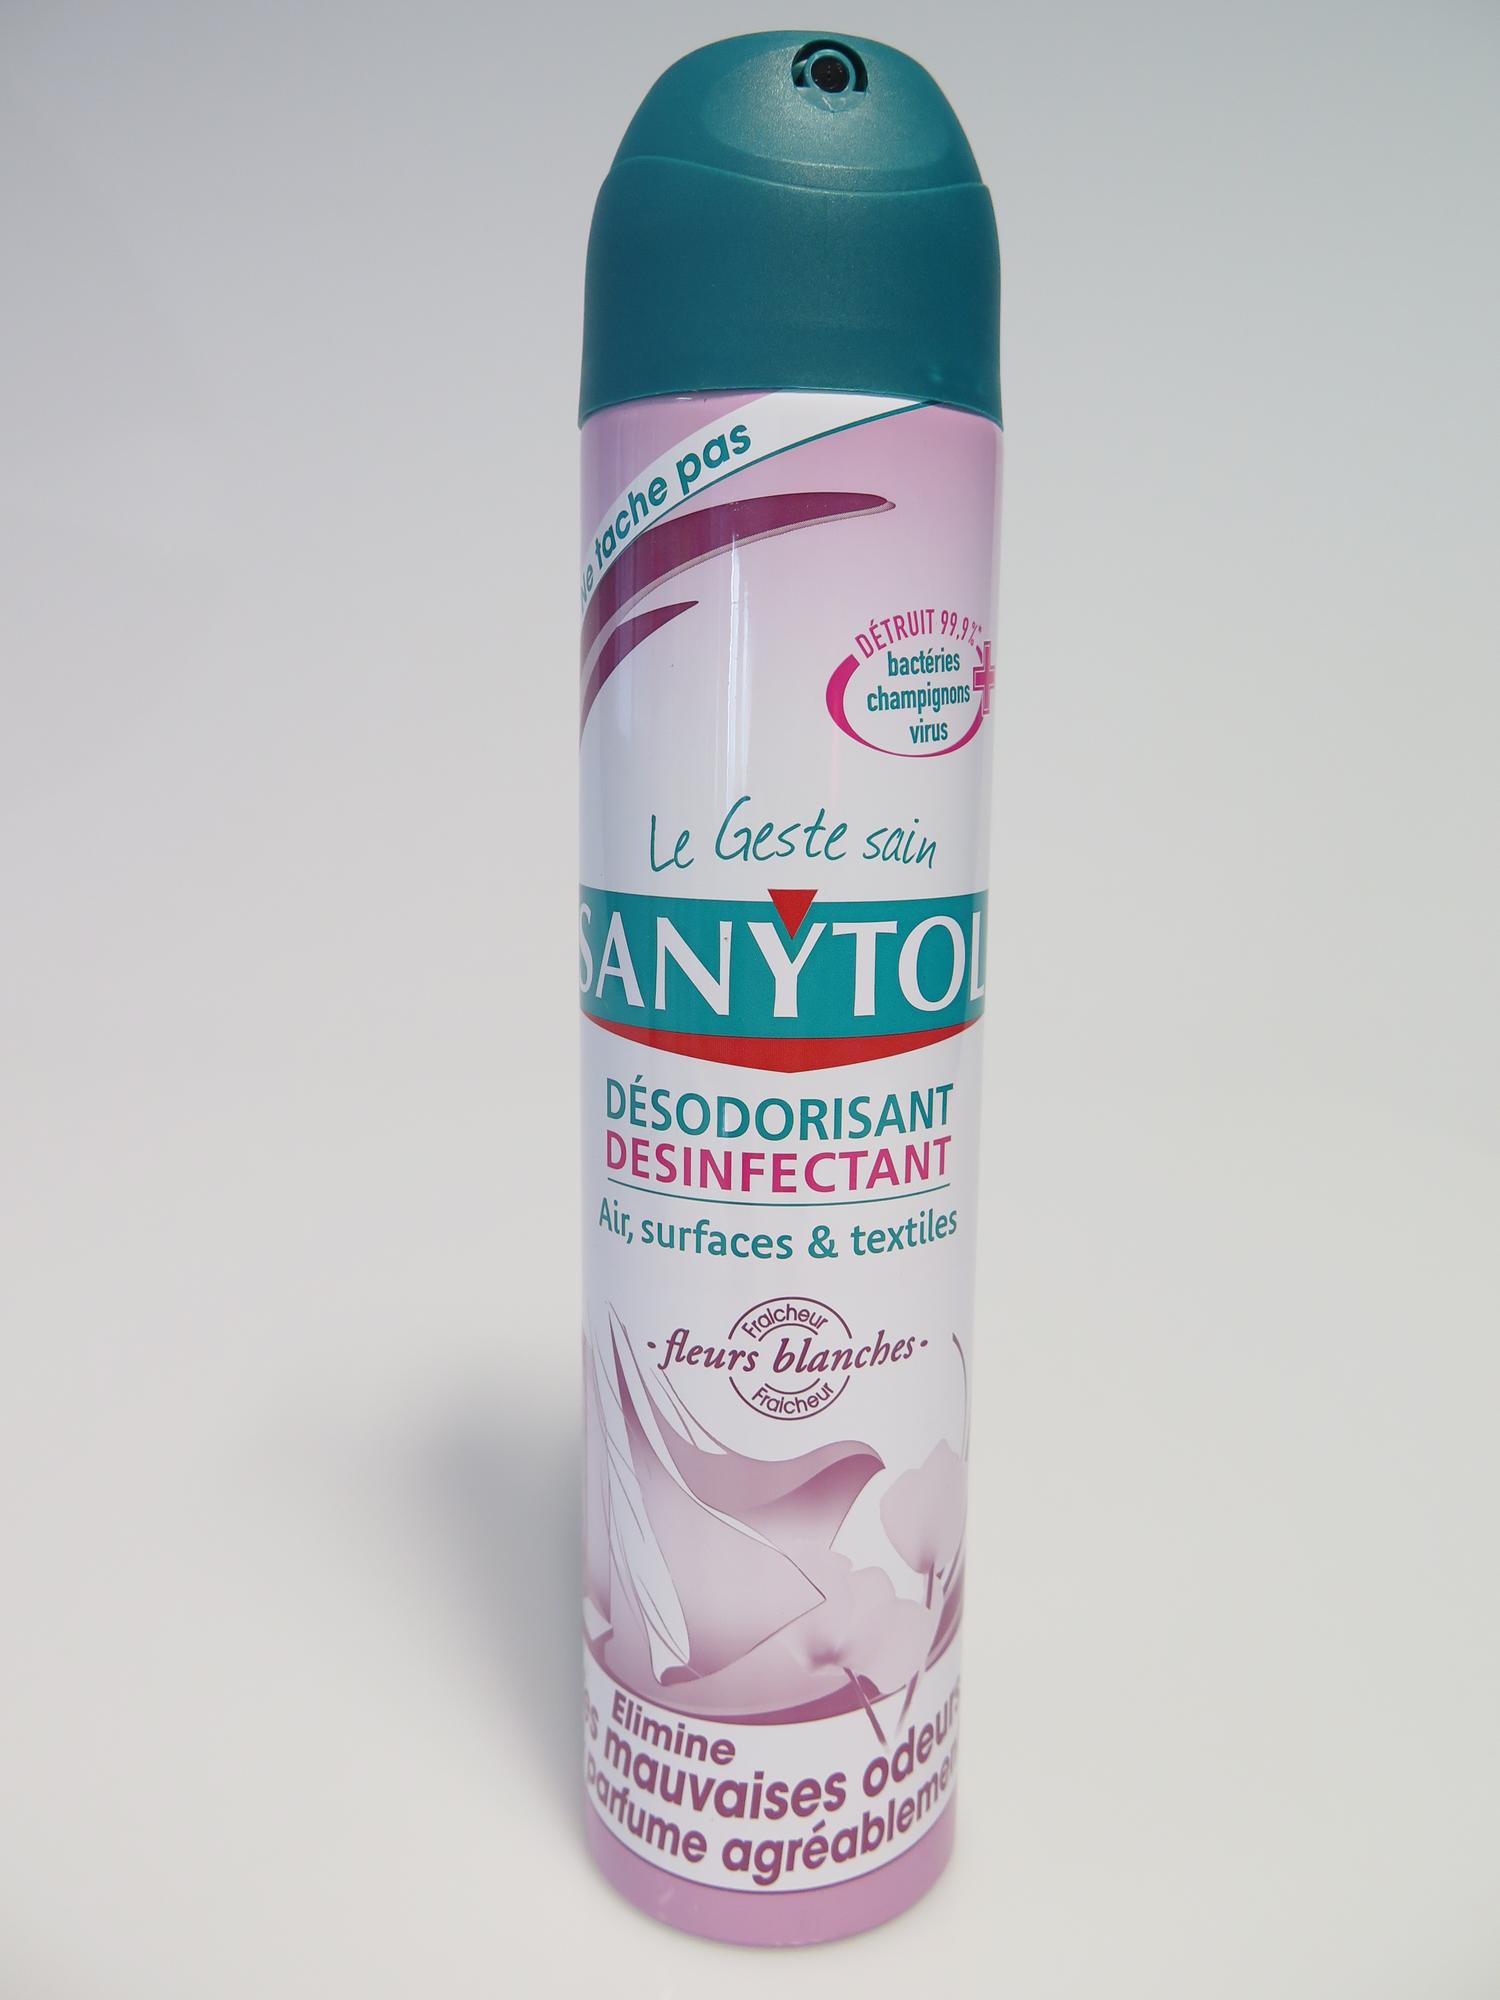 Sanytol Désodorisant Desinfectant Air, Surfaces & Textiles Le Vaporisateur  De 300Ml - DRH MARKET Sarl